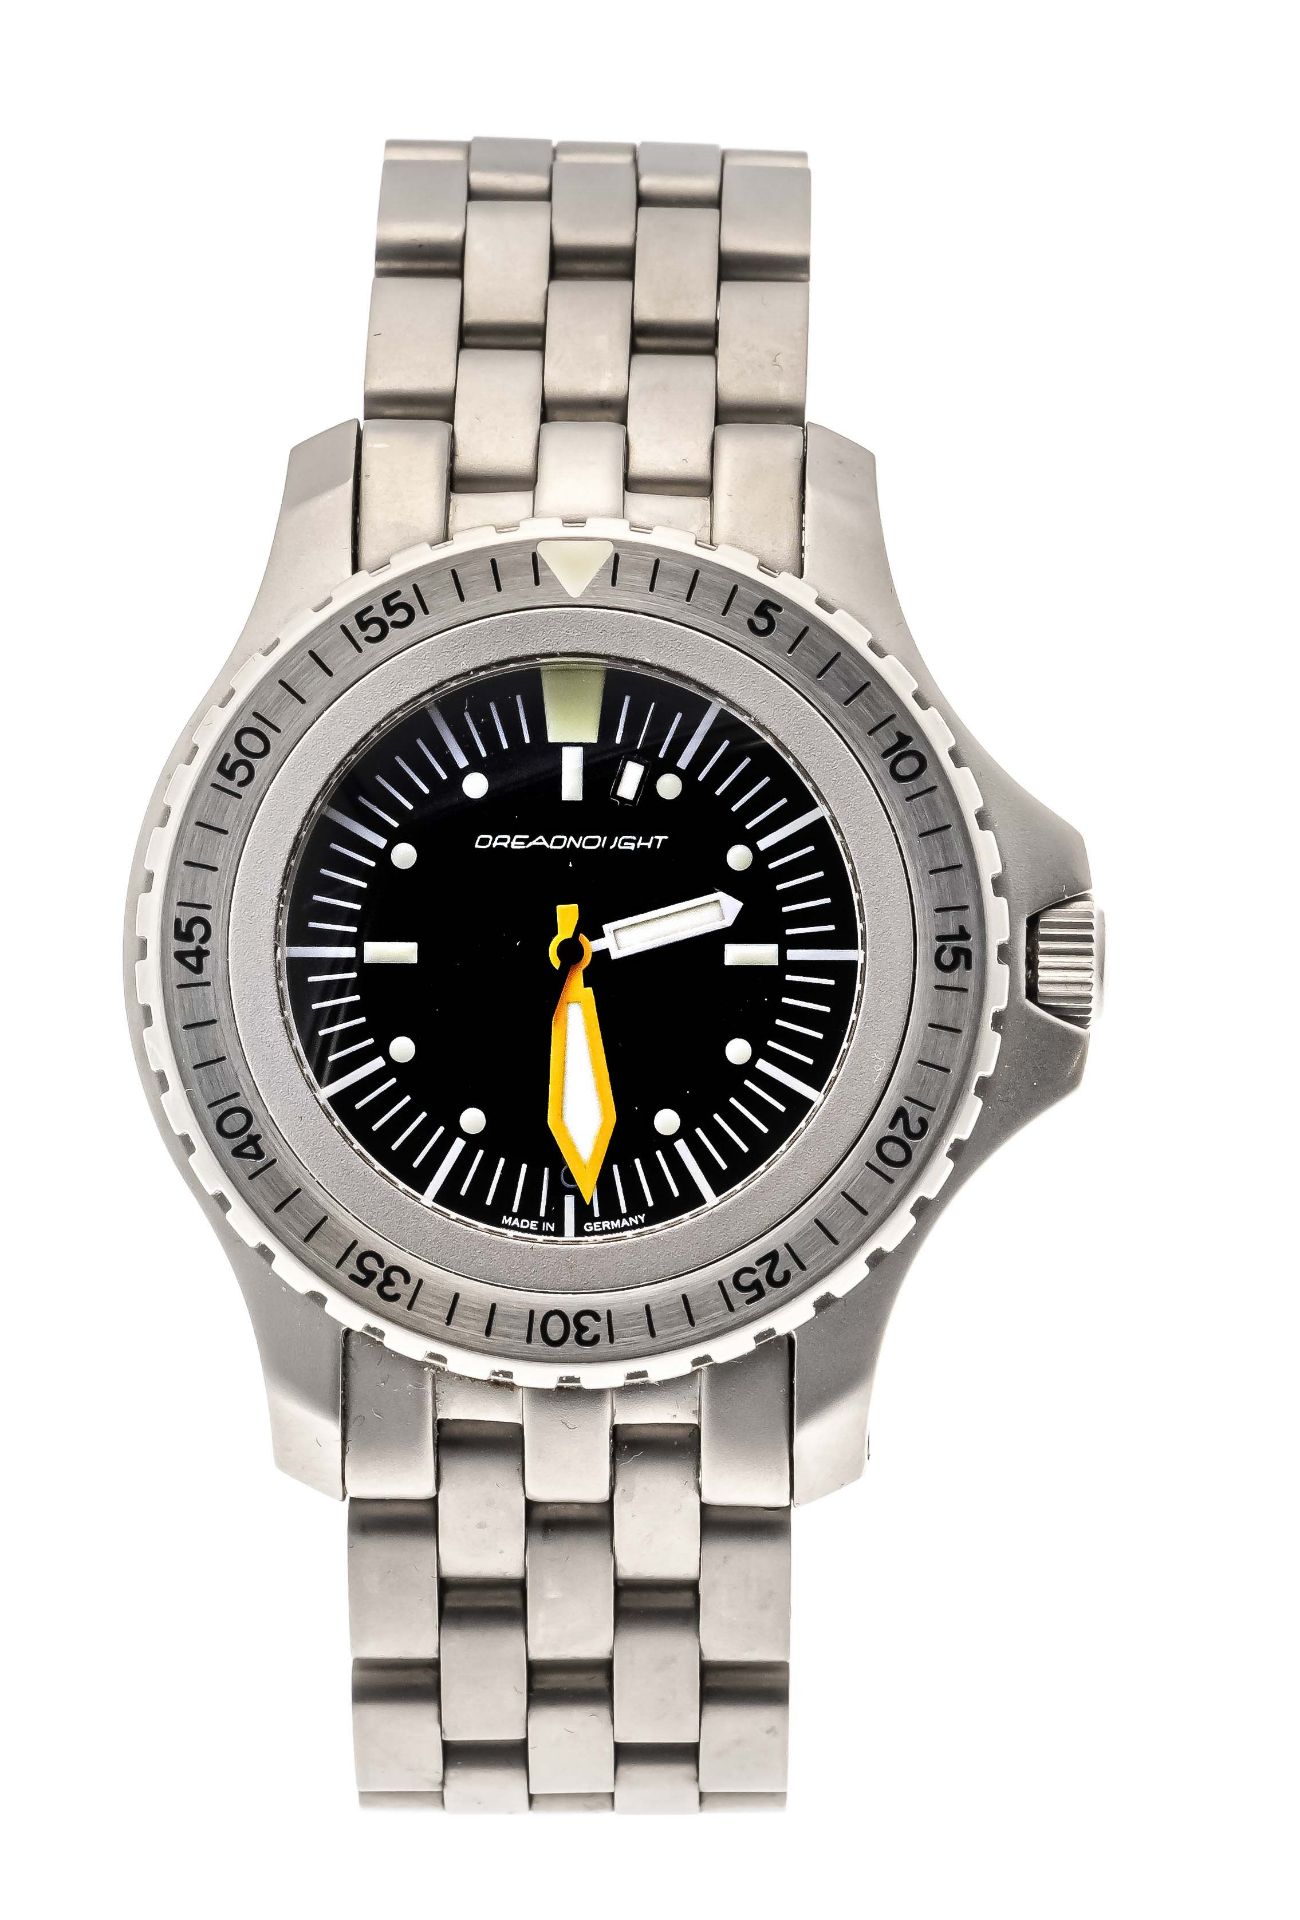 TimeFactors PRS-2 Dreadnought limited Edition 124/200, men's watch, automatic, chronometer, movement